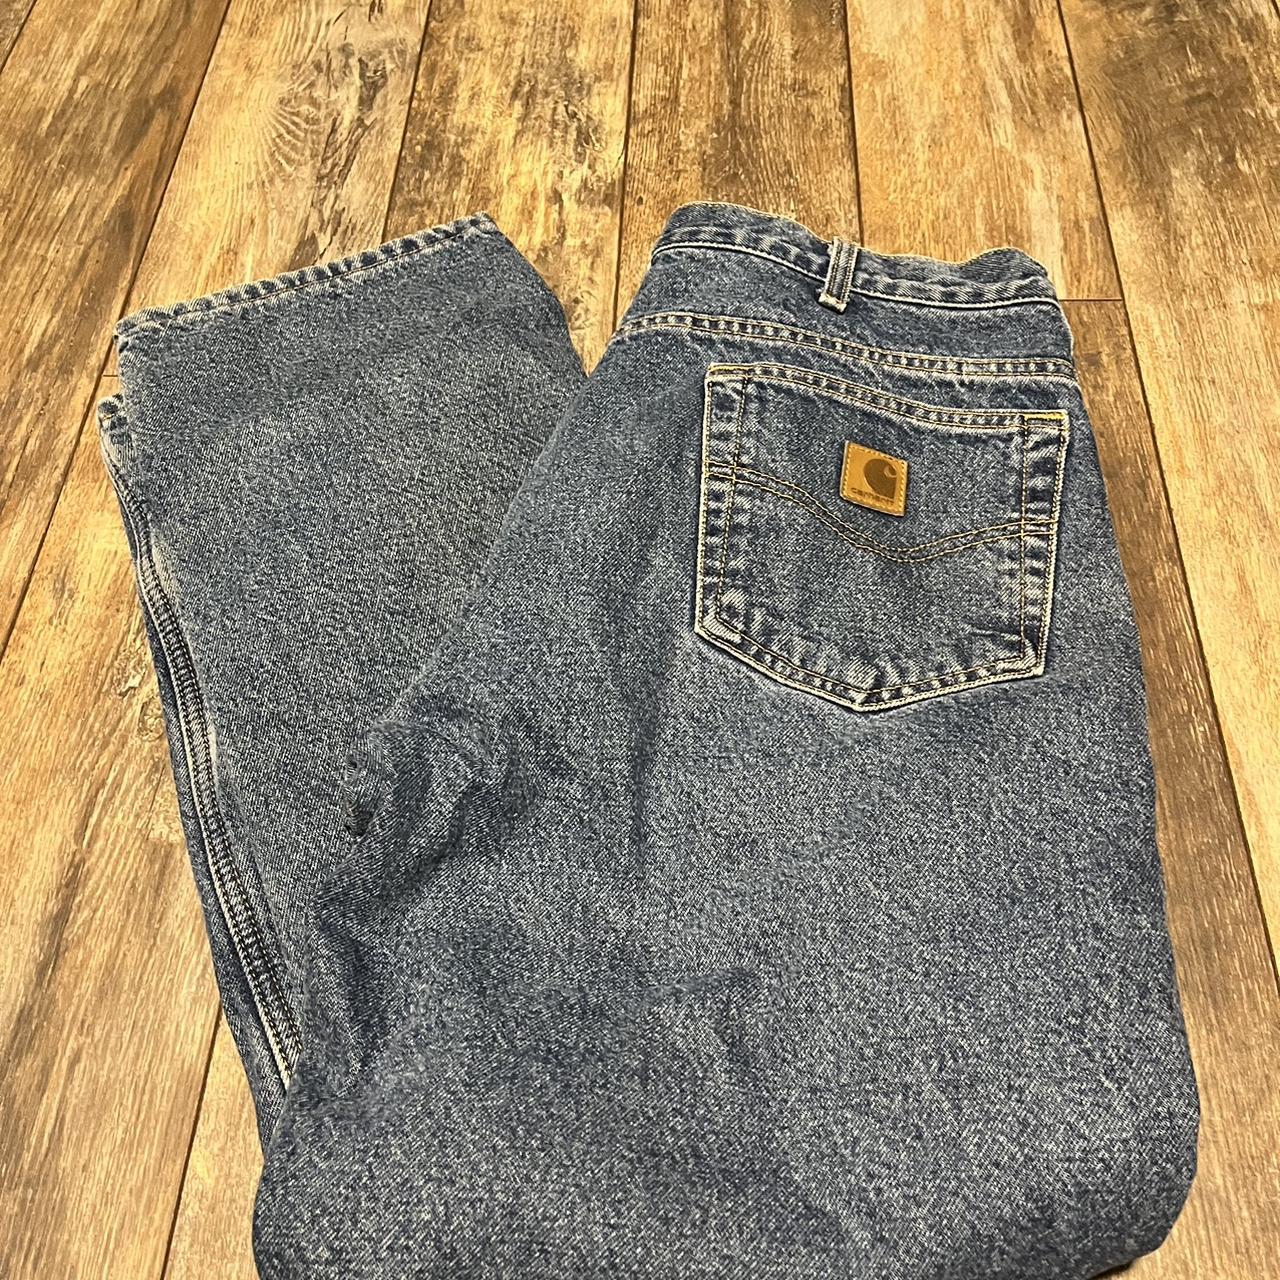 Carhartt Fleece Lined Jeans - Depop